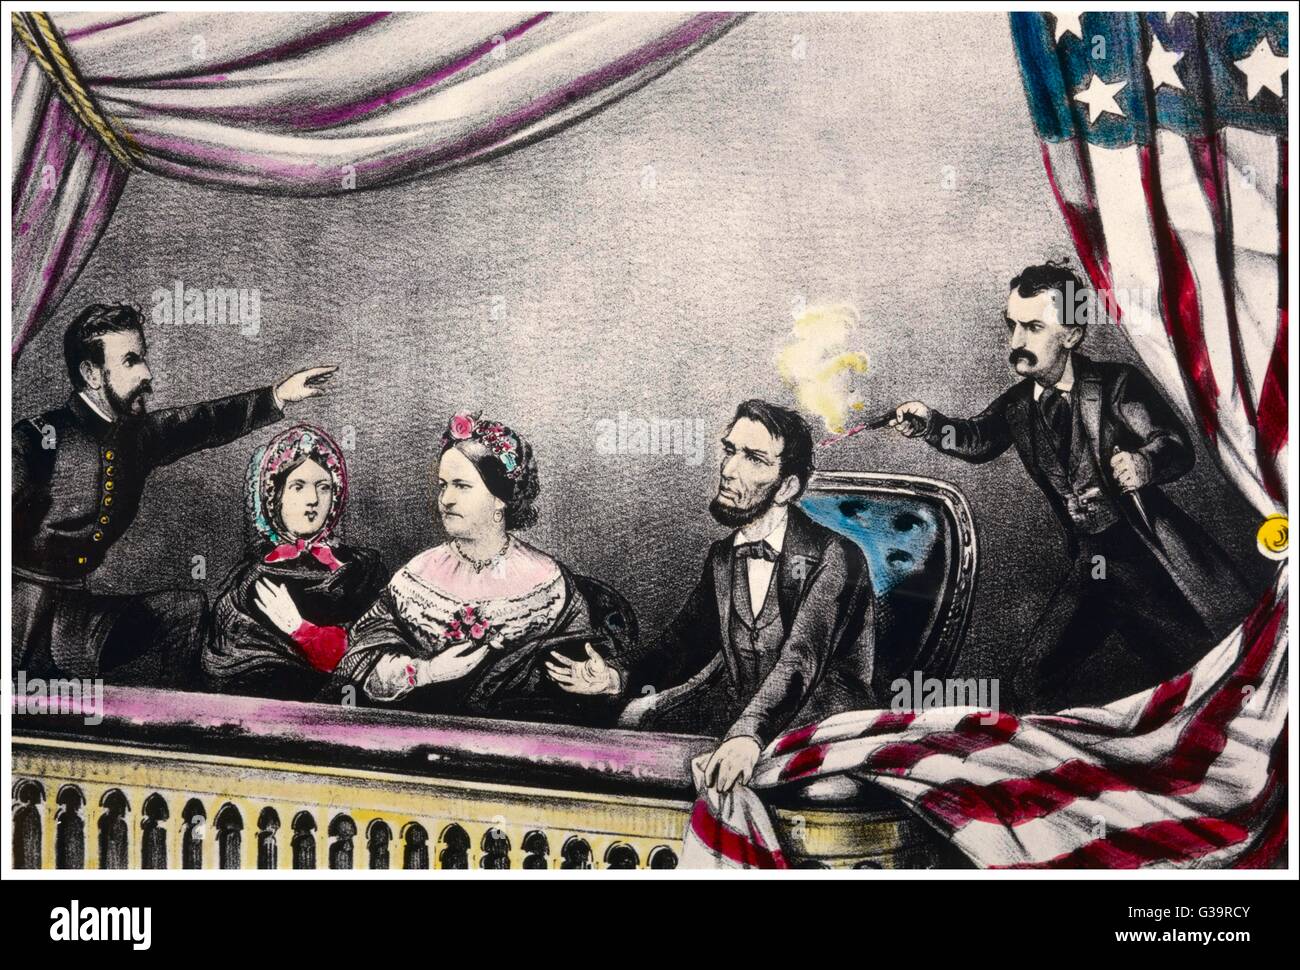 Abraham Lincoln, Präsident der Vereinigten Staaten, wird am Theater von John Wilkes Booth erschossen.      Datum: April 1865 Stockfoto